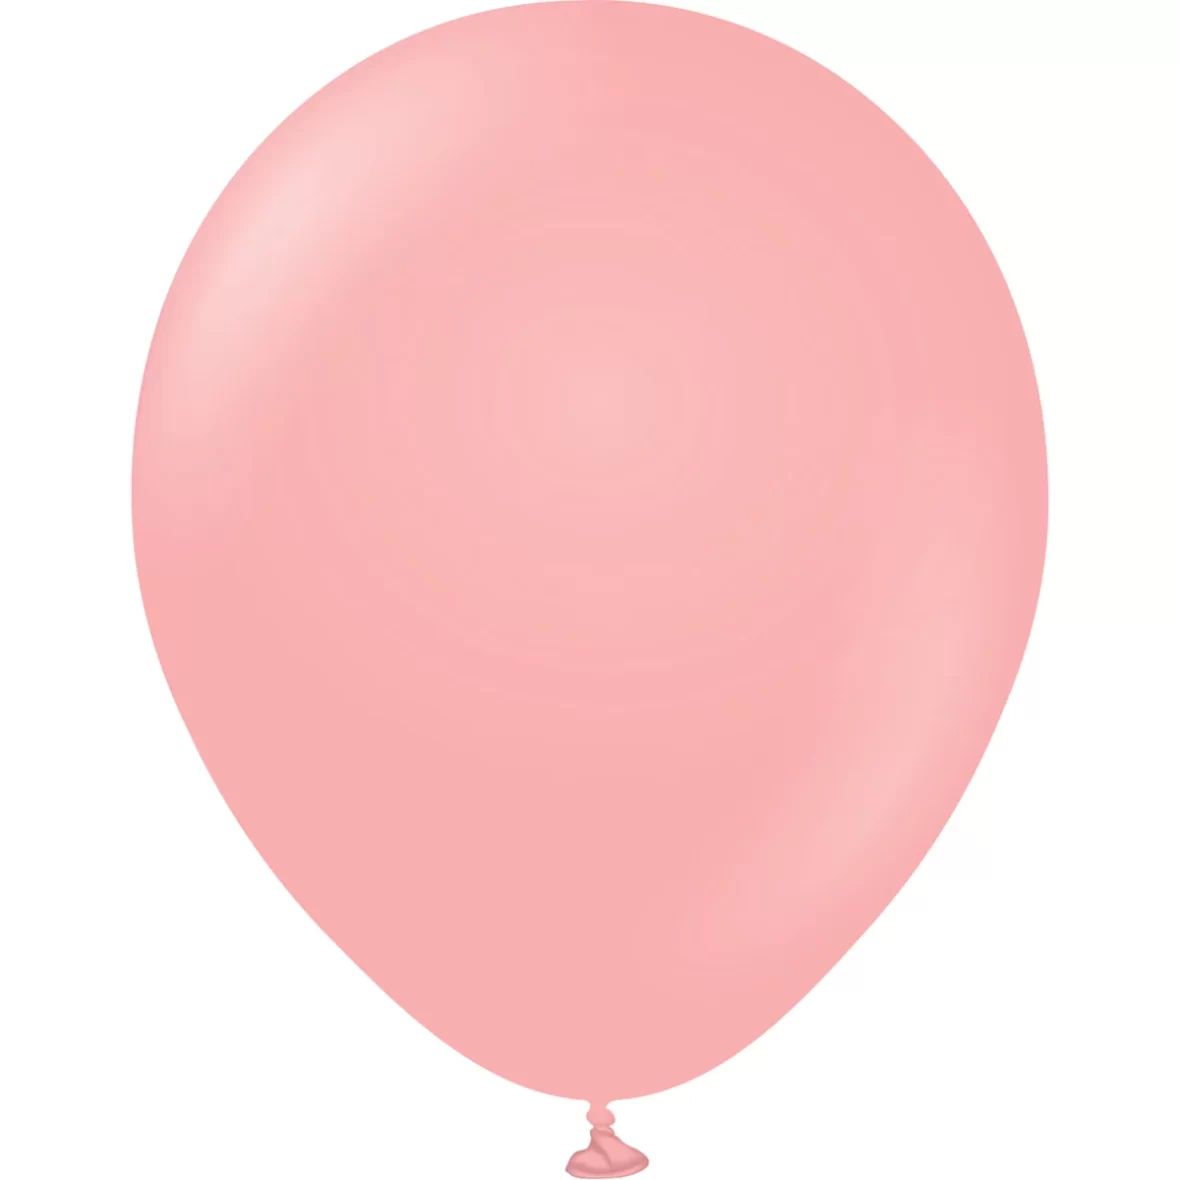 979-baloane-jumbo-ovale-45-cm-5